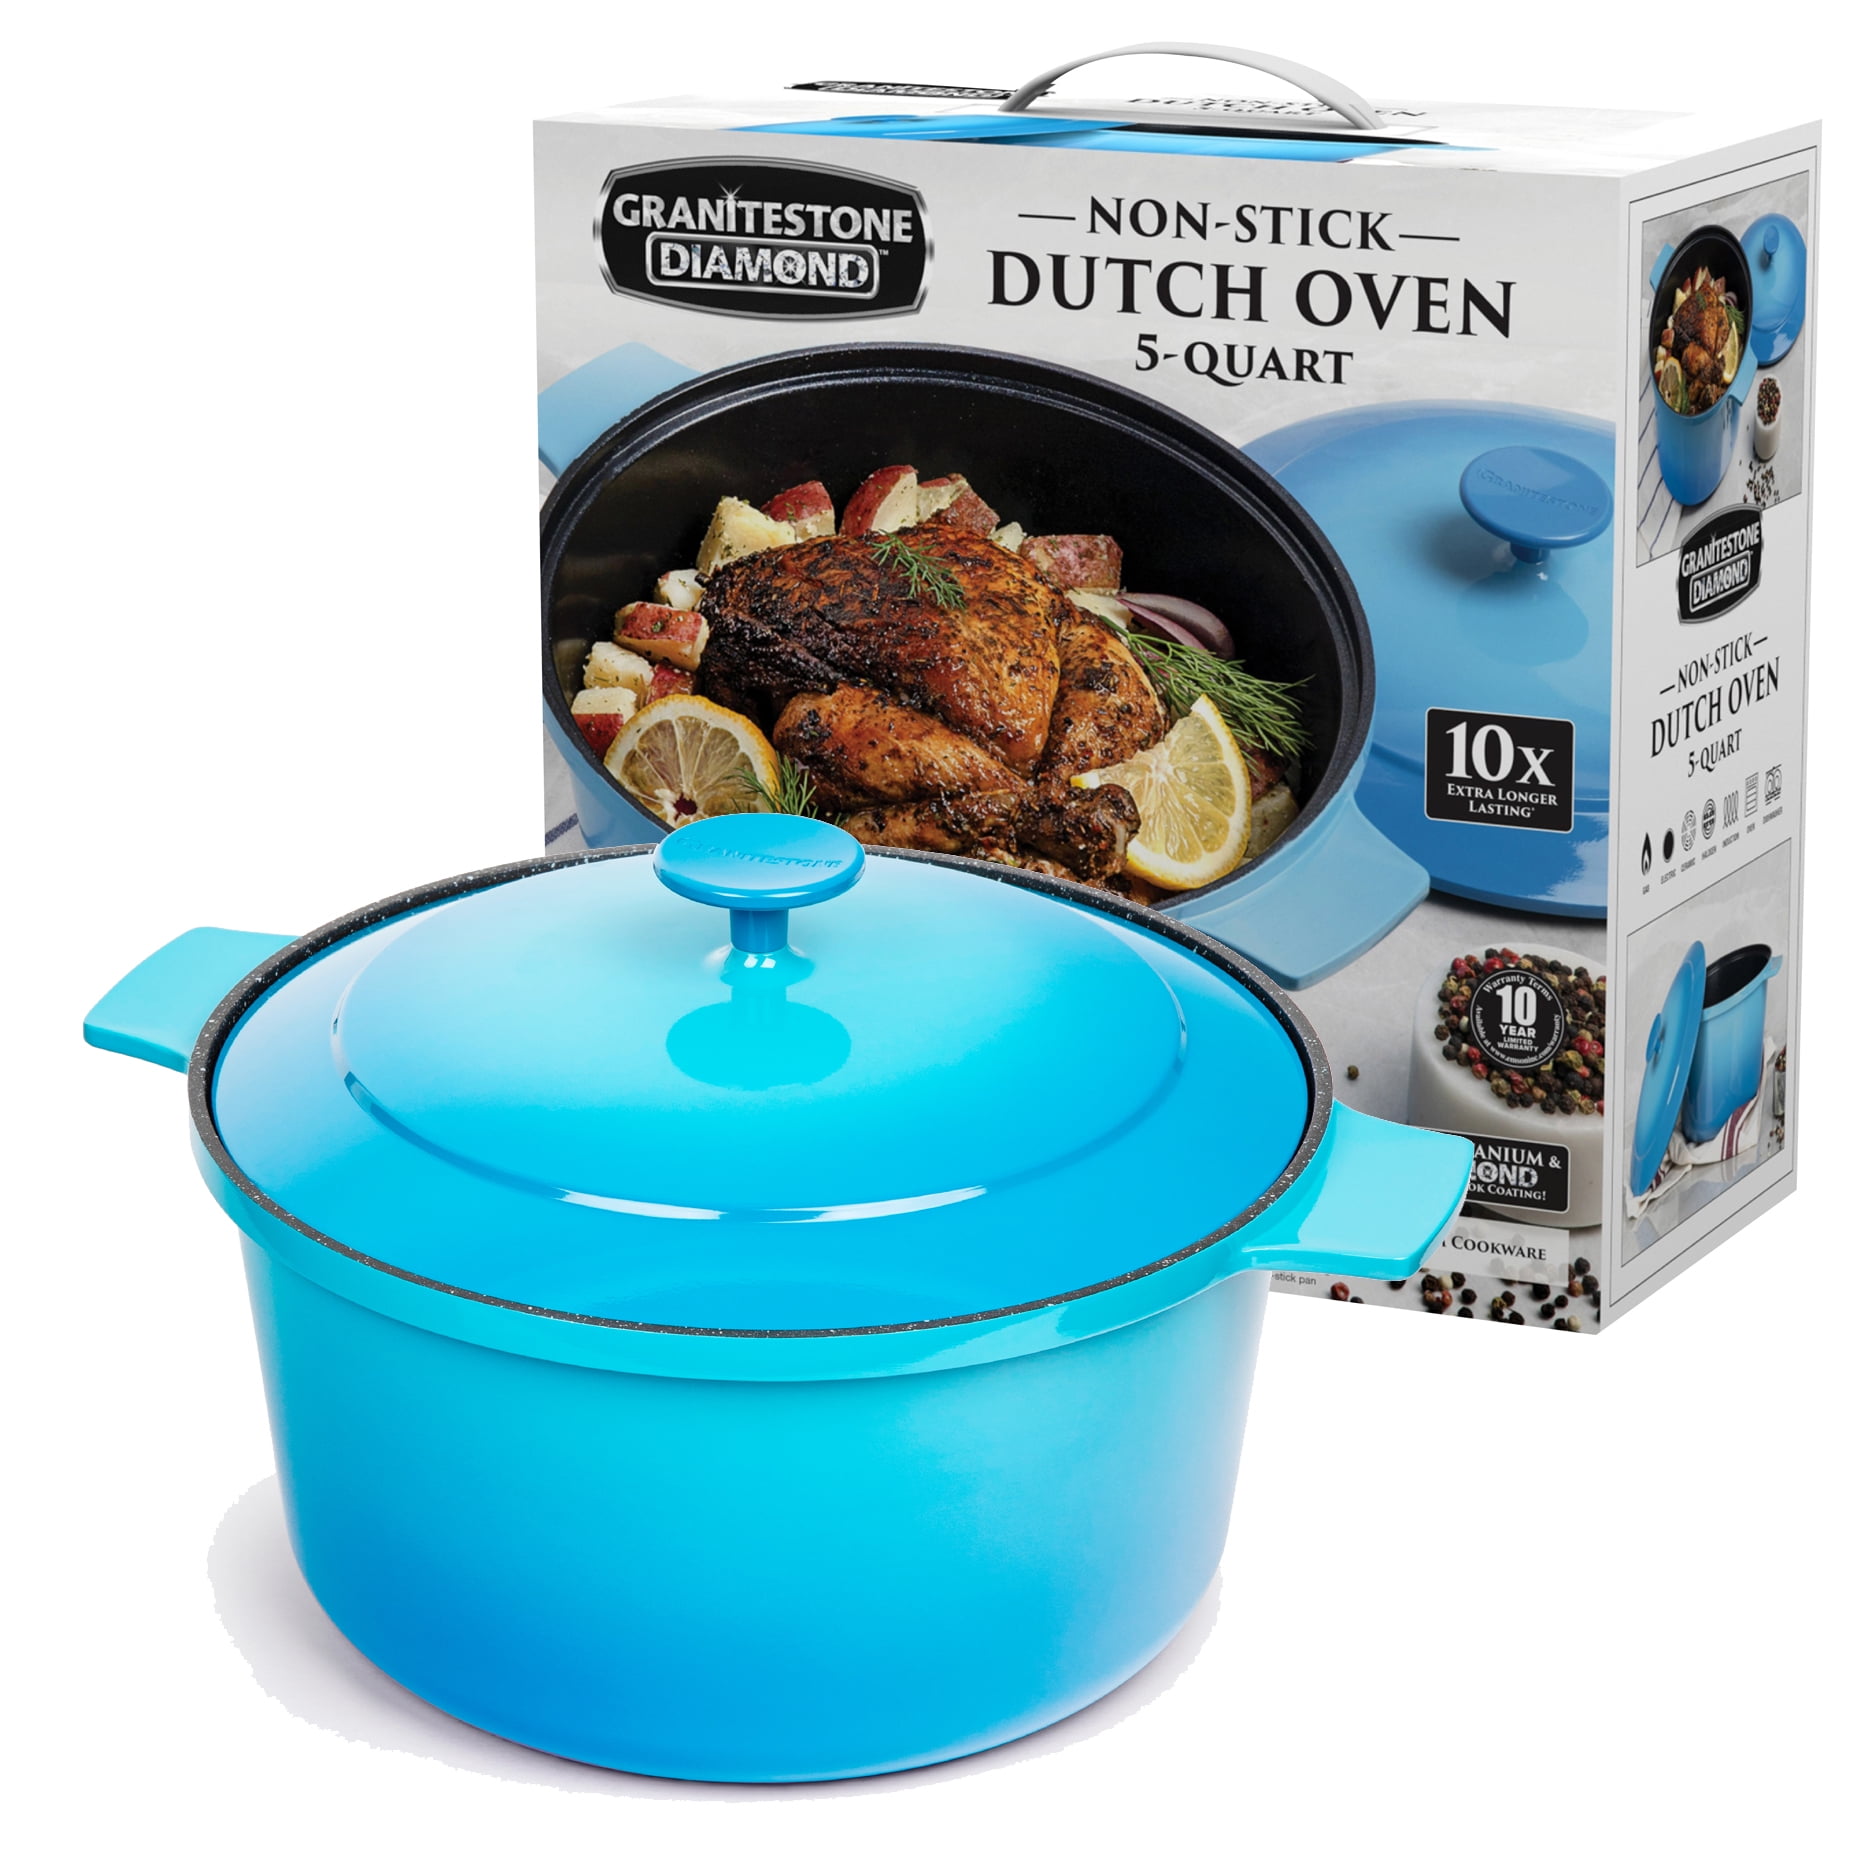 5 Qt Nonstick Dutch Oven